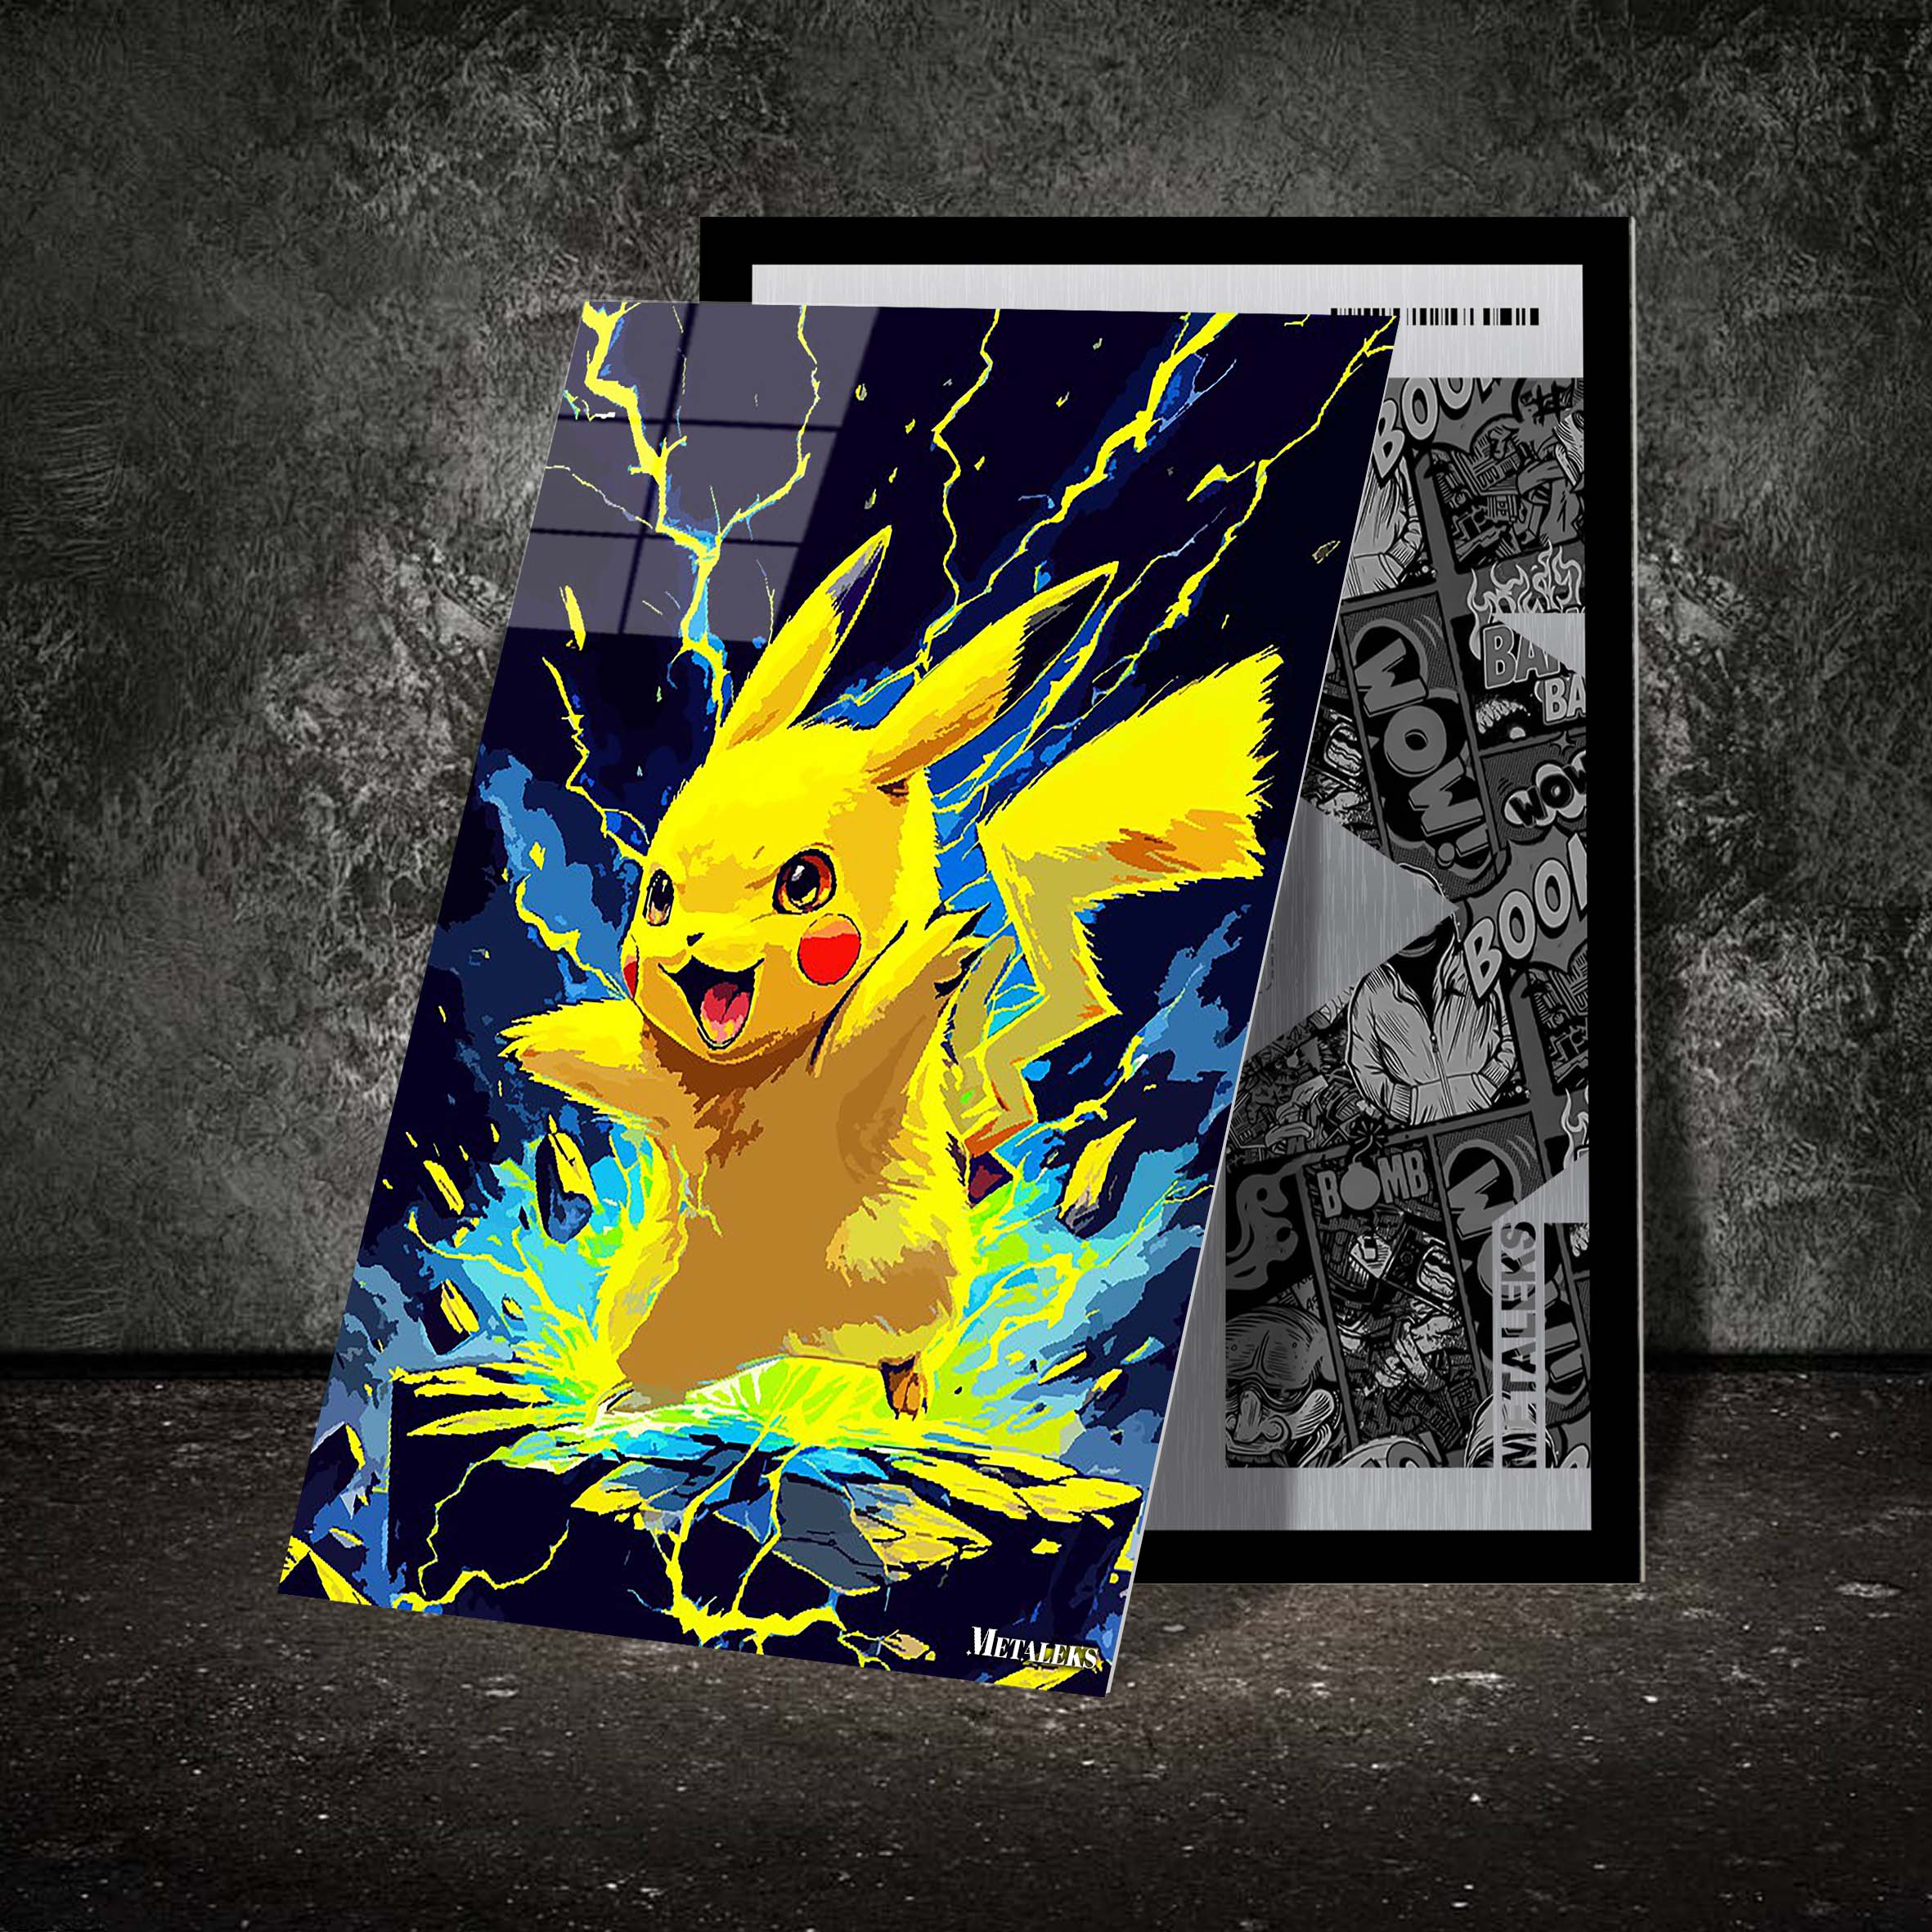 Pikachu Style Lightning-designed by @Nadhifsaoqi